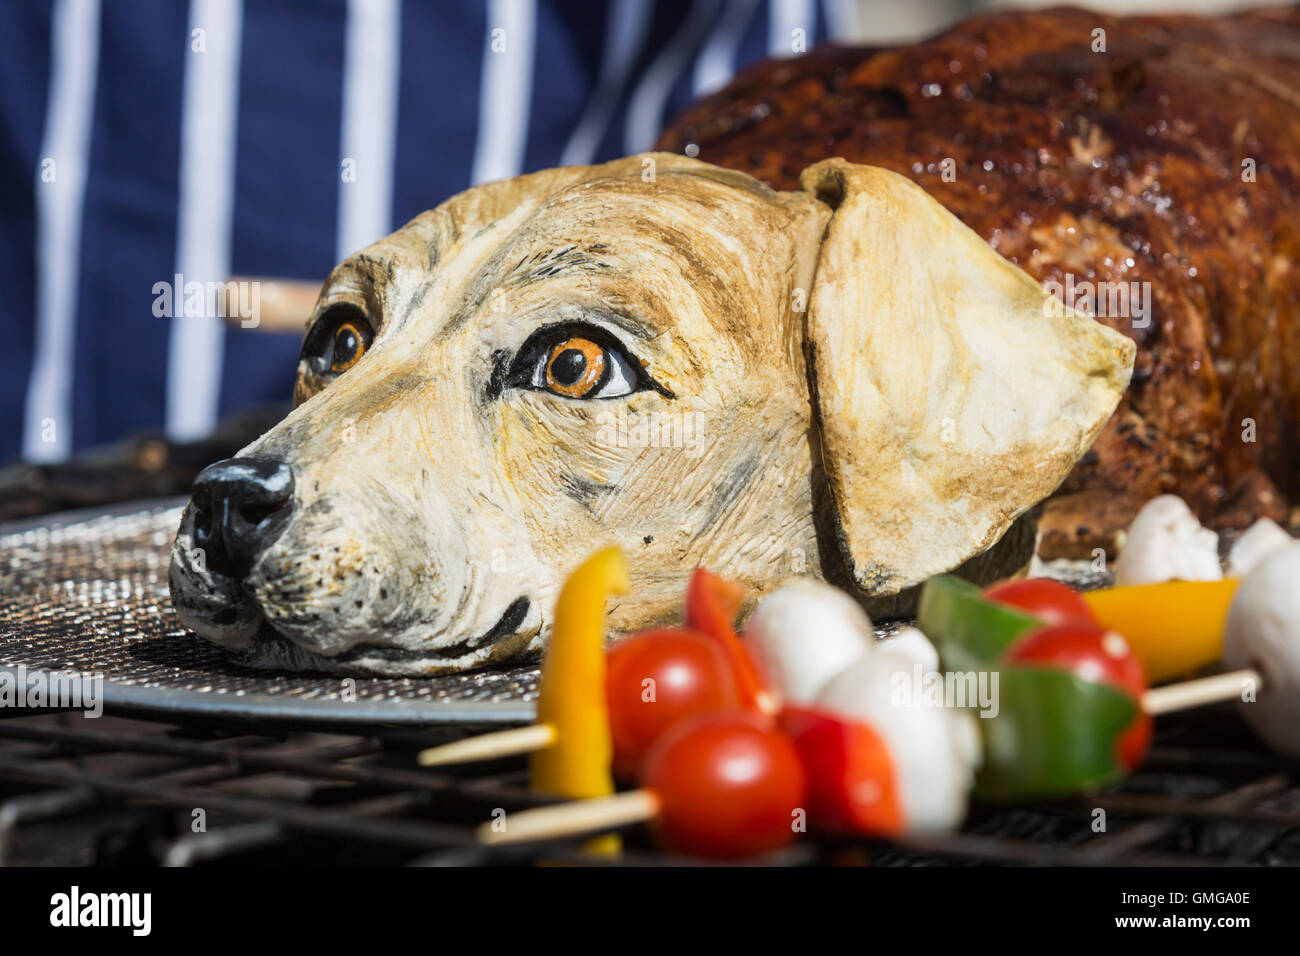 falskhed attribut Delegeret London, UK. 26. August 2016. Tierrechte Unterstützer PETA Braten einen "Hund"  im Herzen des Trafalgar Square dazu anregen, Vegan zu gehen. "Wenn Sie  einen Hund essen würde nicht, warum ein Schwein essen?